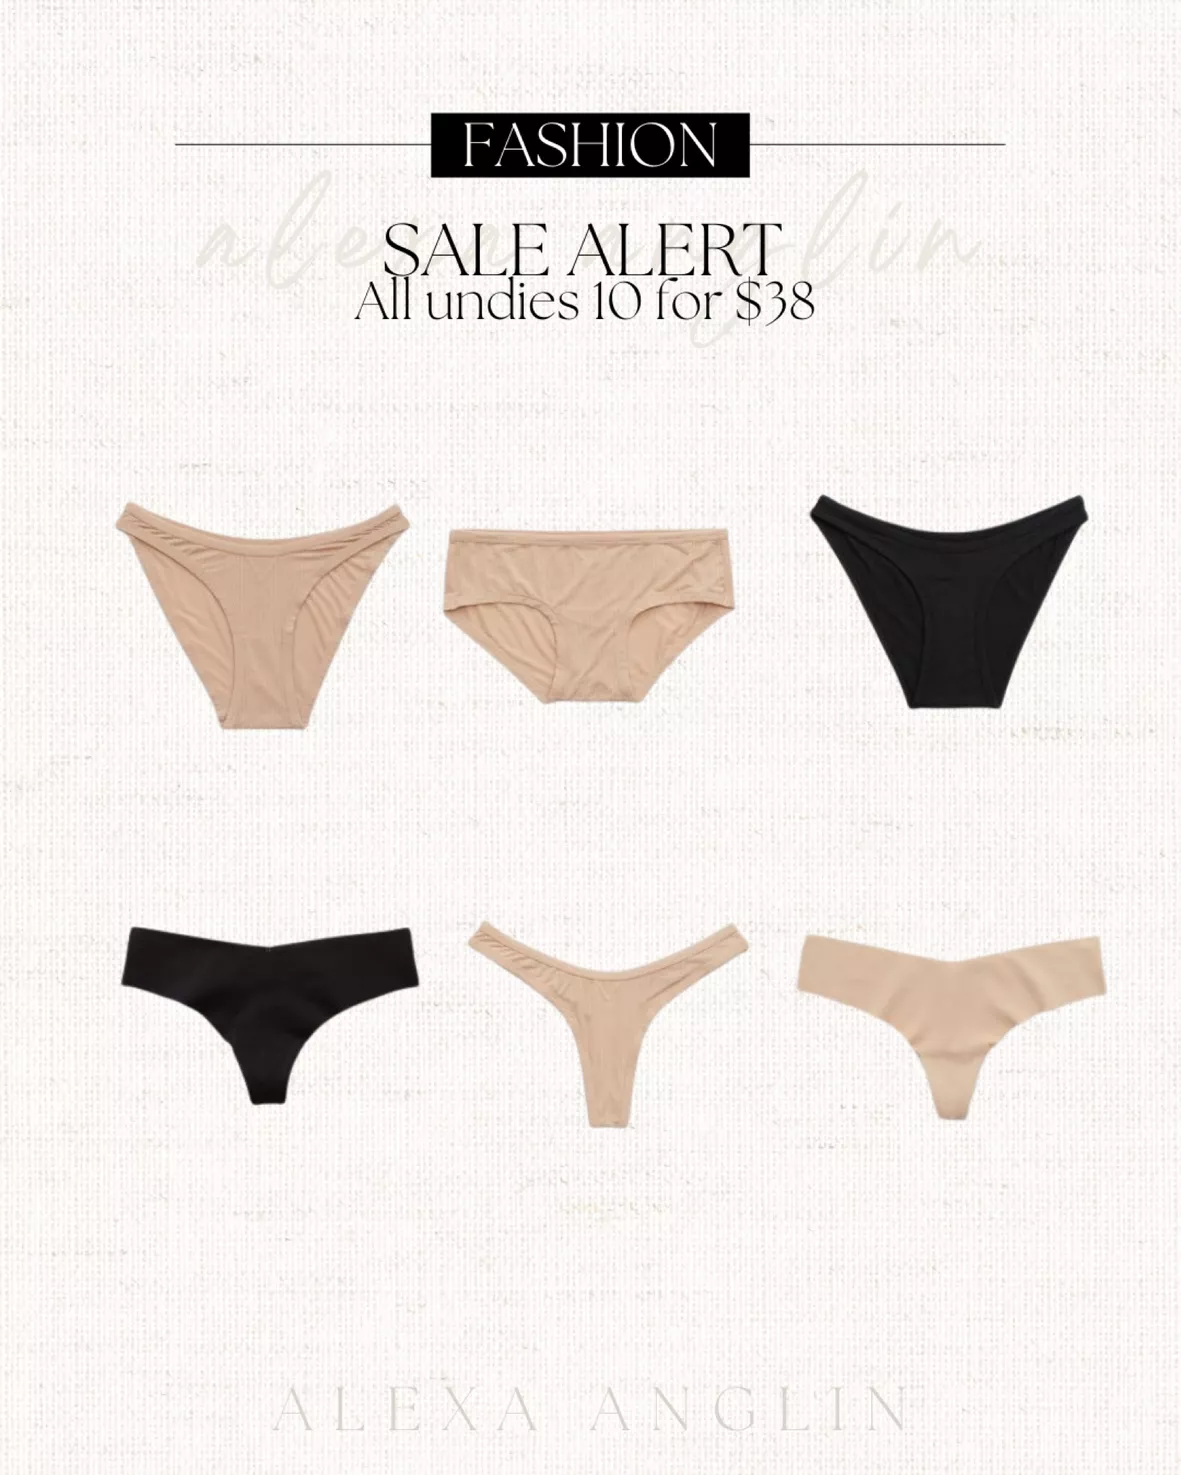 Women's aerie underwear in the Sale